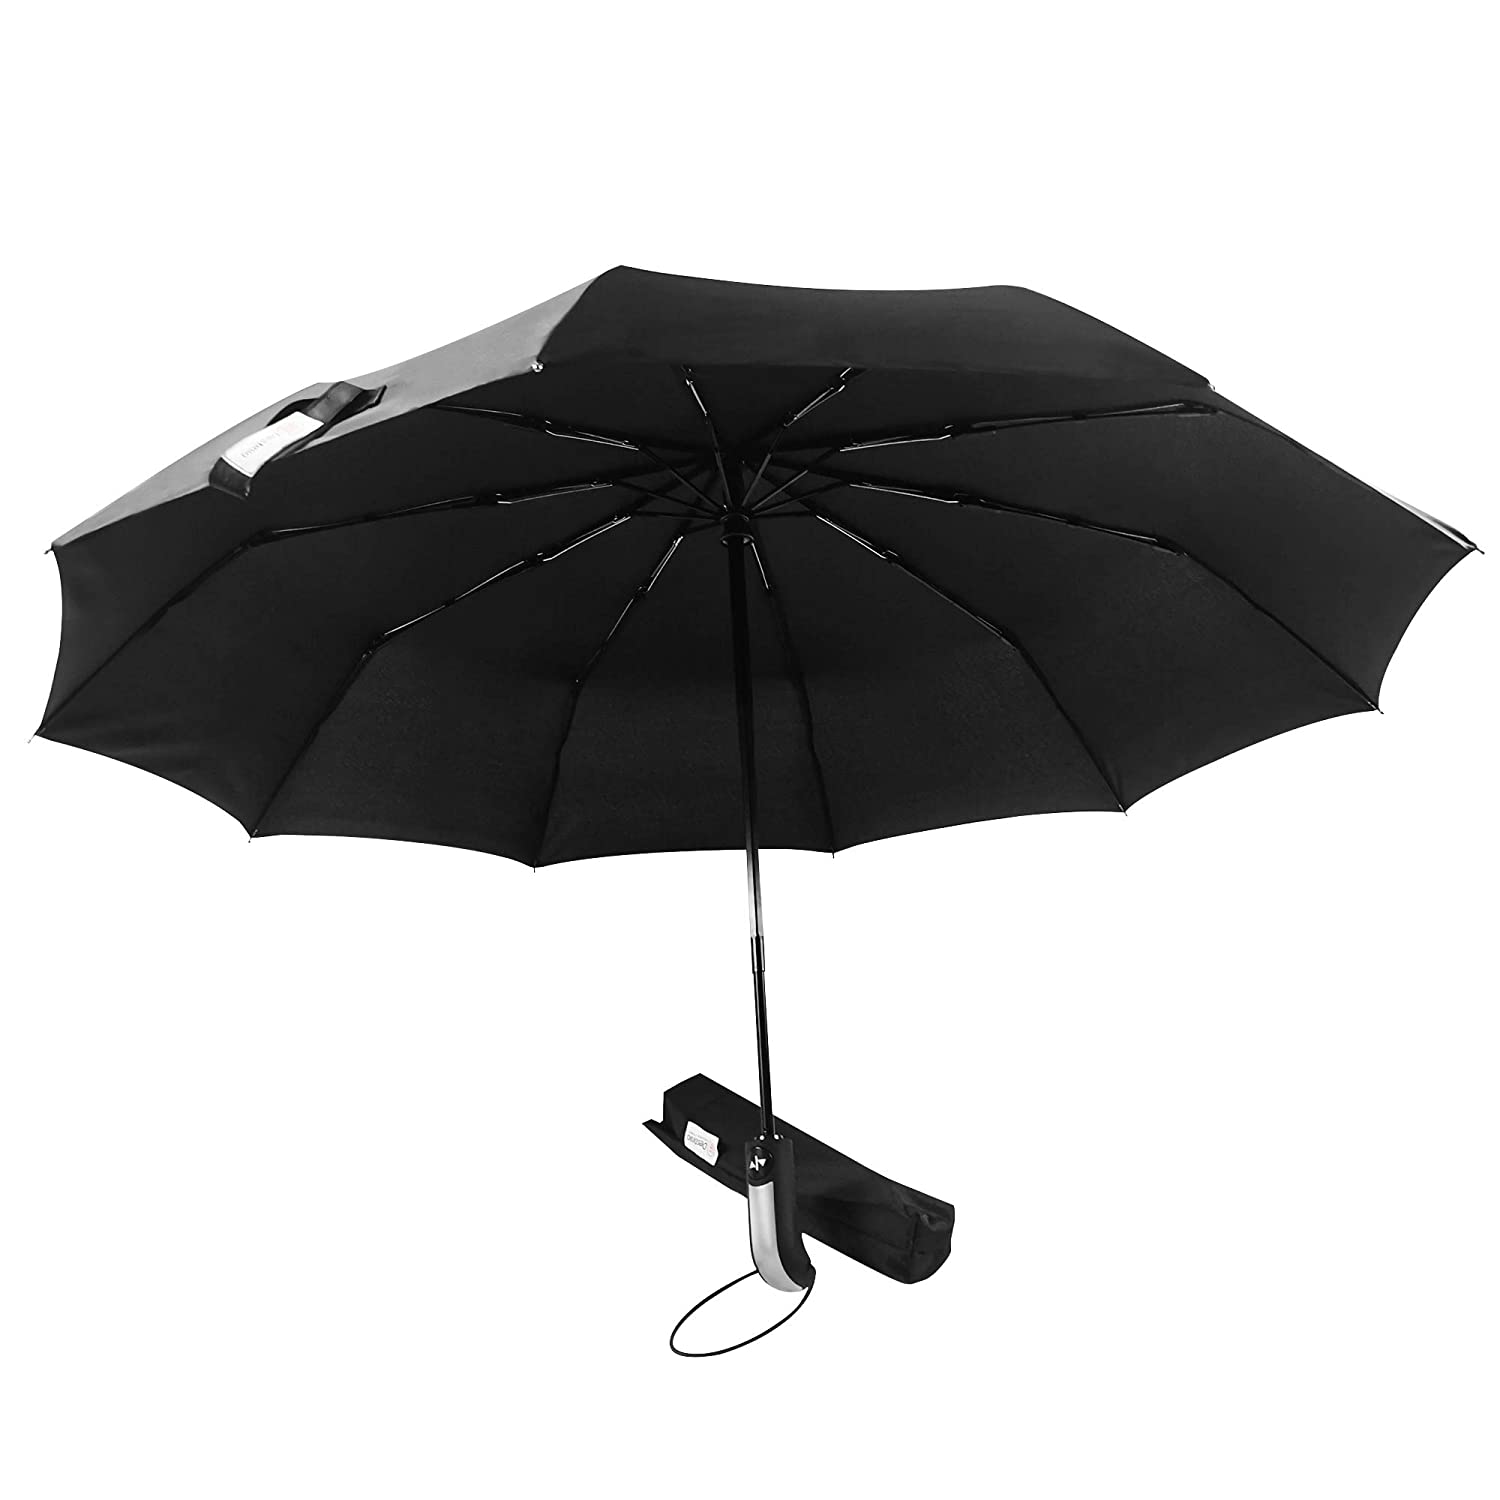 Destinio Umbrella for rain